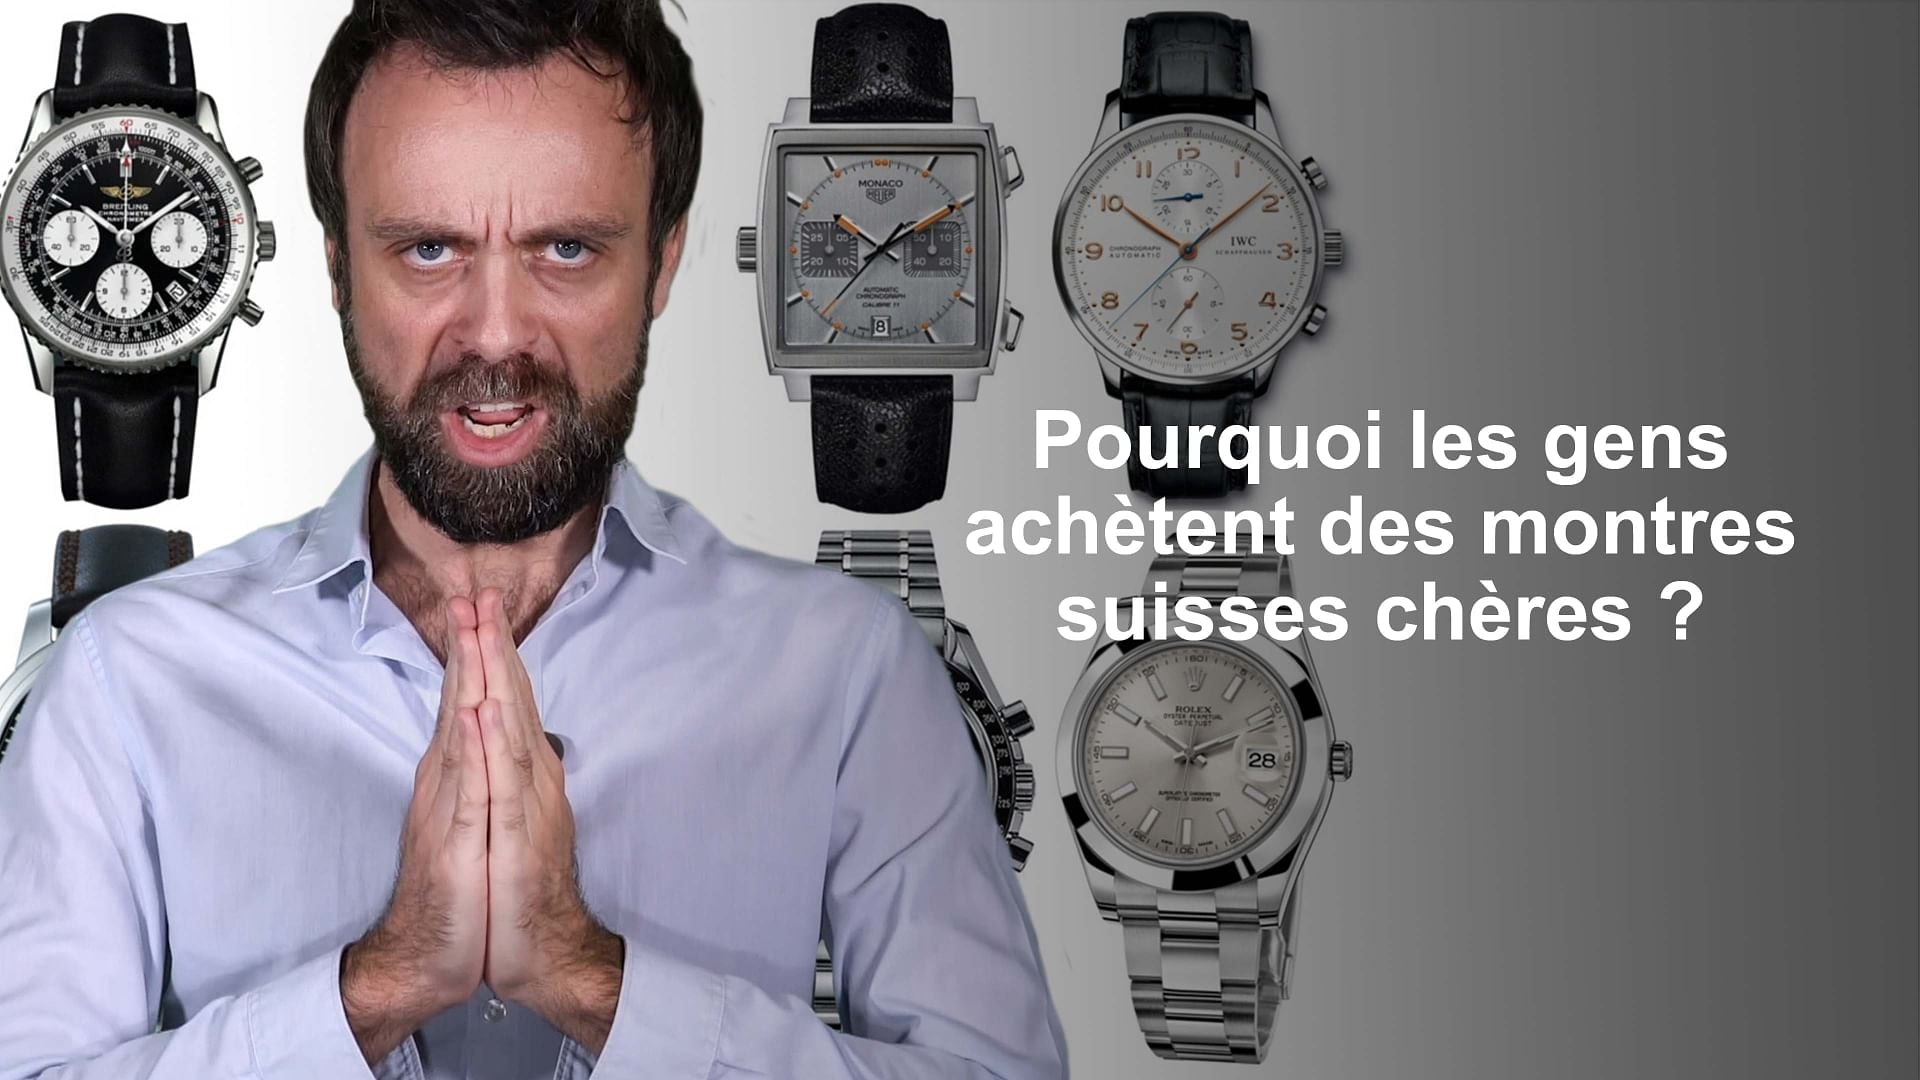 Suisse ? - Pourquoi les gens achètent des montres suisses super chères?